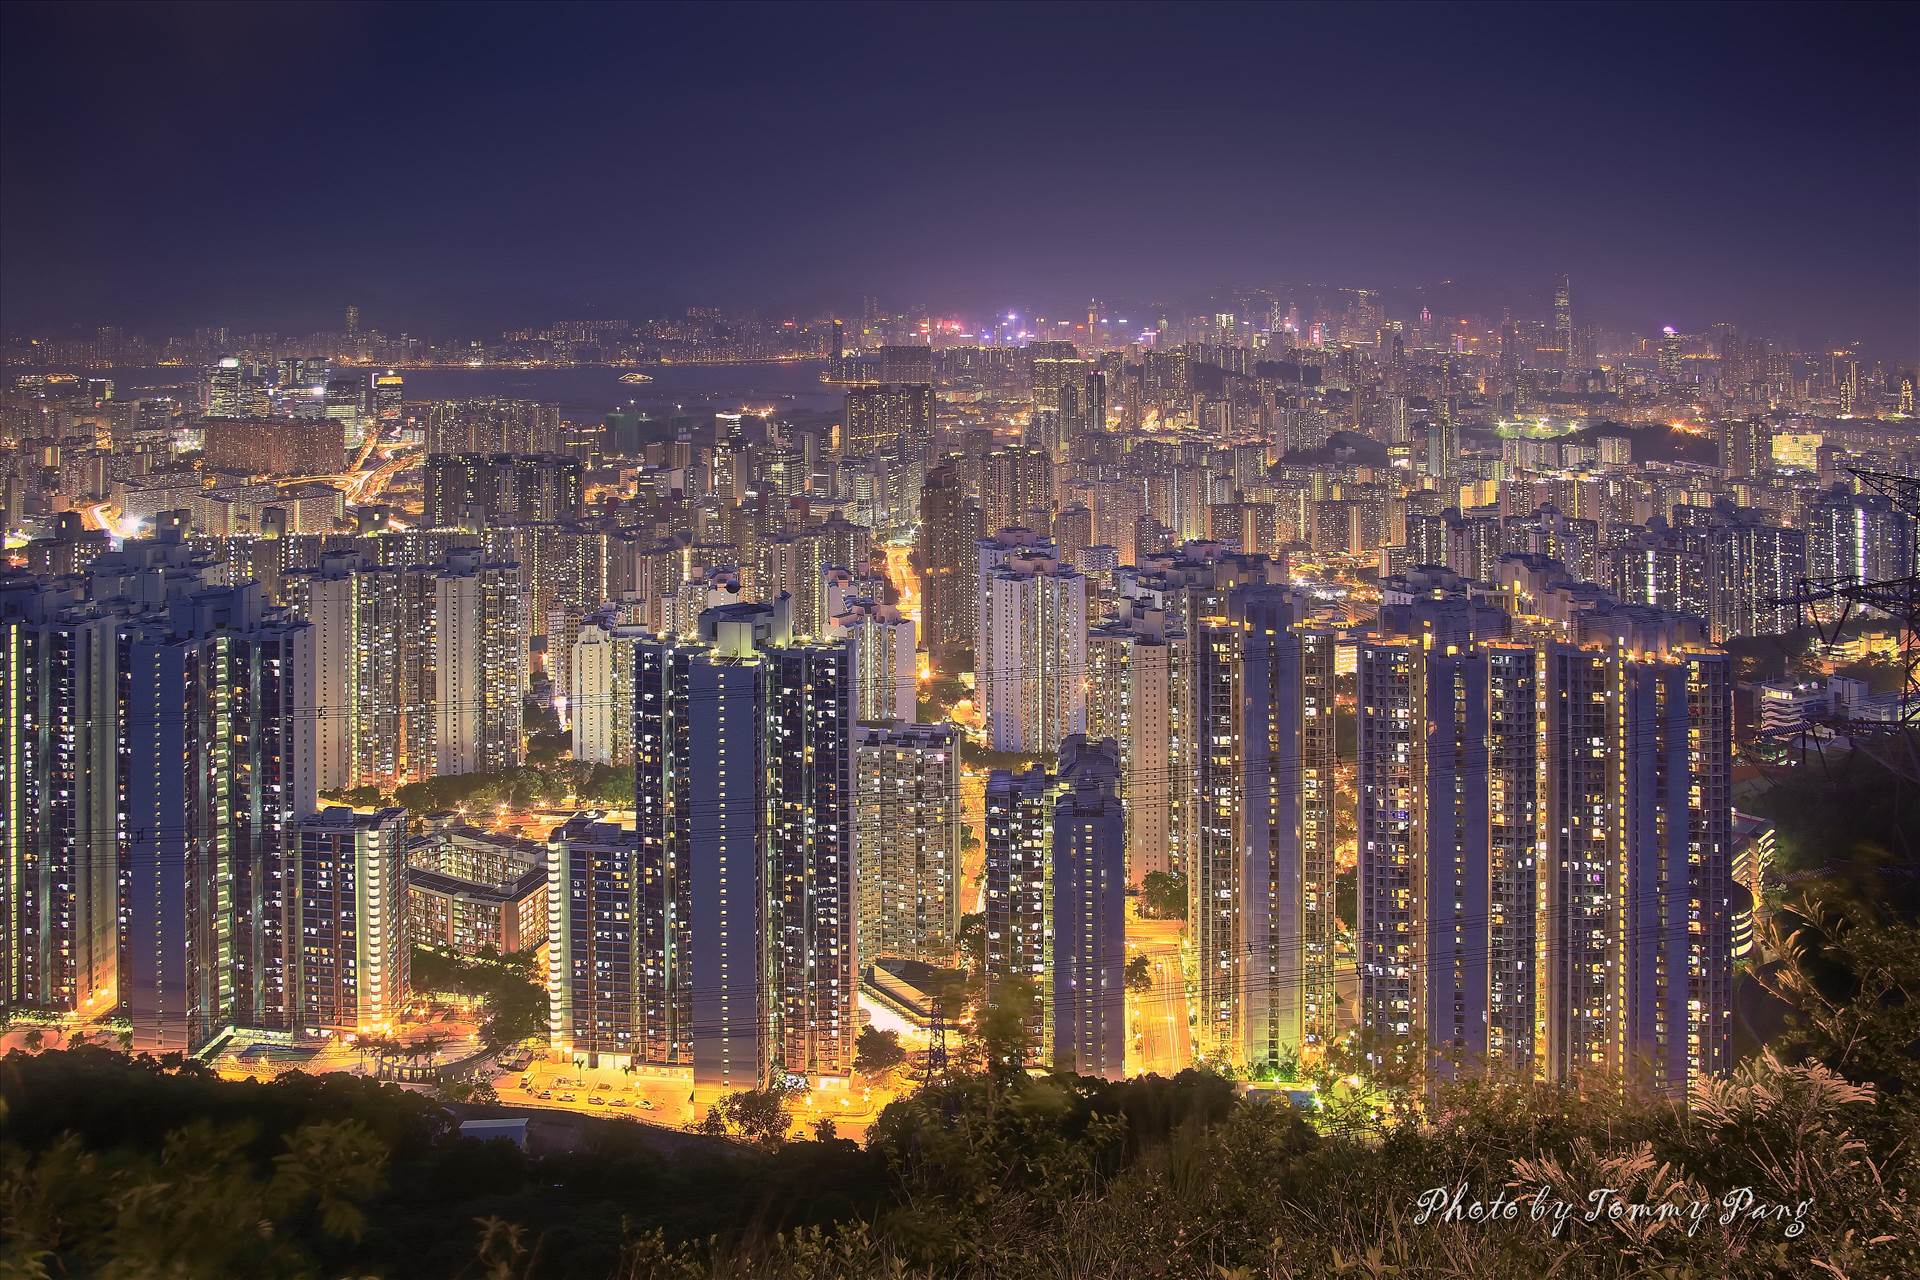 City Lights - Hong Kong at Night  by WPC-274